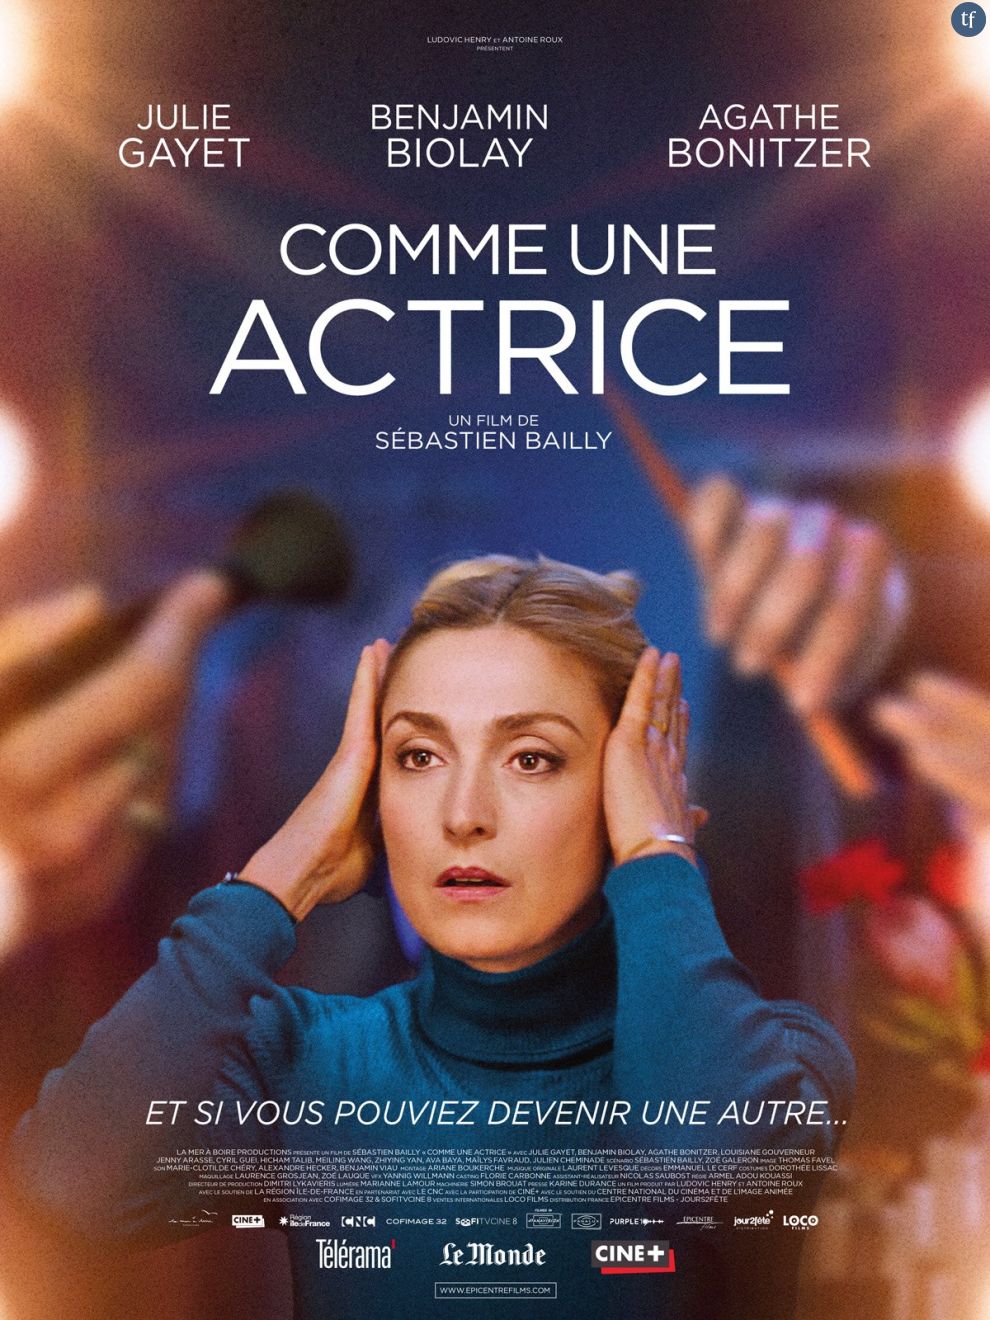  Julie Gayet sera bientôt à l&#039;affiche d&#039;une chronique féministe prometteuse : le film  Comme une actrice  de Sébastien Bailly, attendu en salles le 8 mars prochain.   